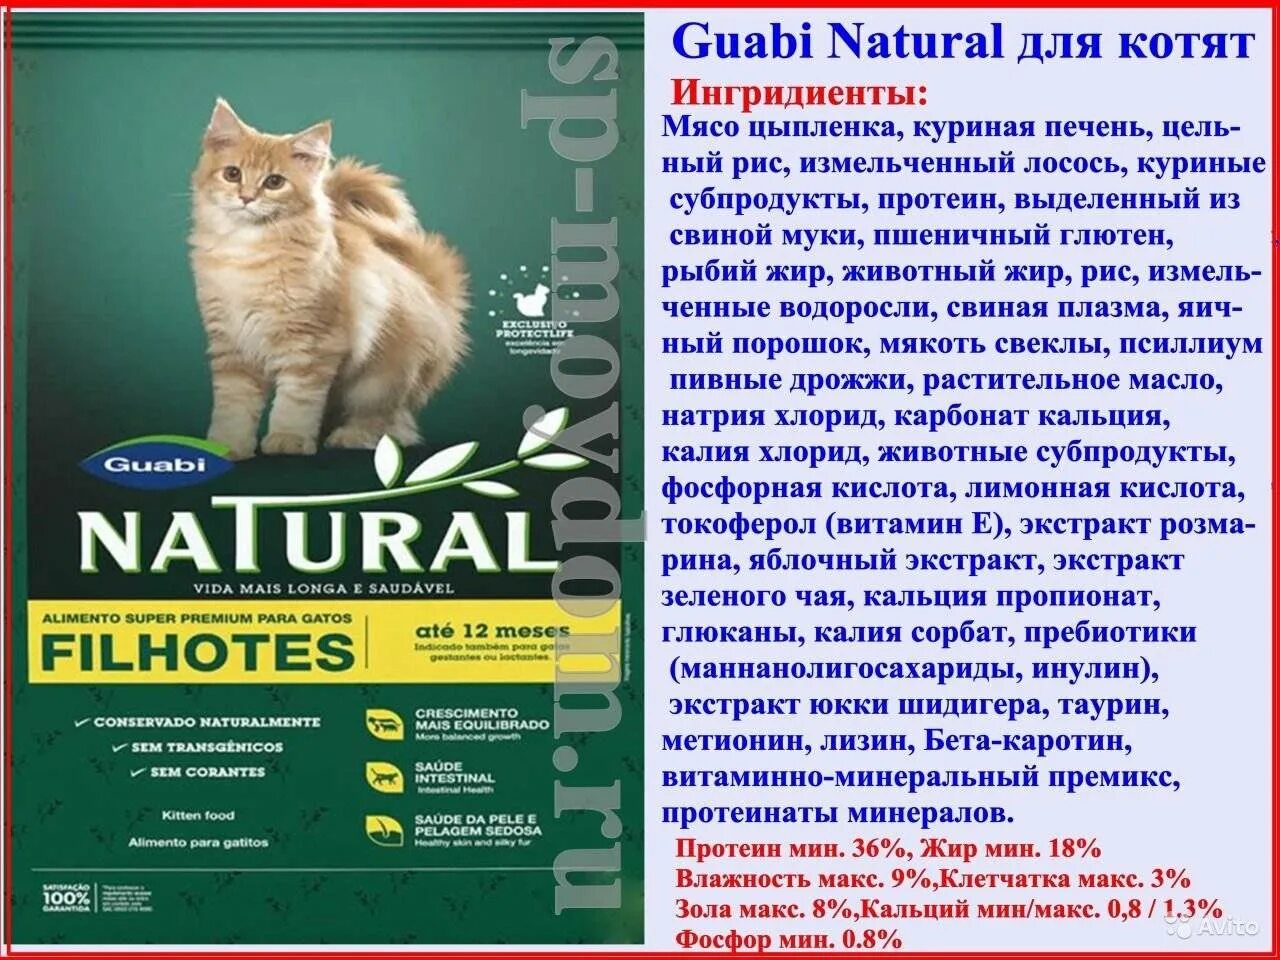 Guabi natural. Guabi natural для кошек состав. Корма Гуаби натурал для кошек. Guabi natural для собак состав. Состав Гуаби корм.